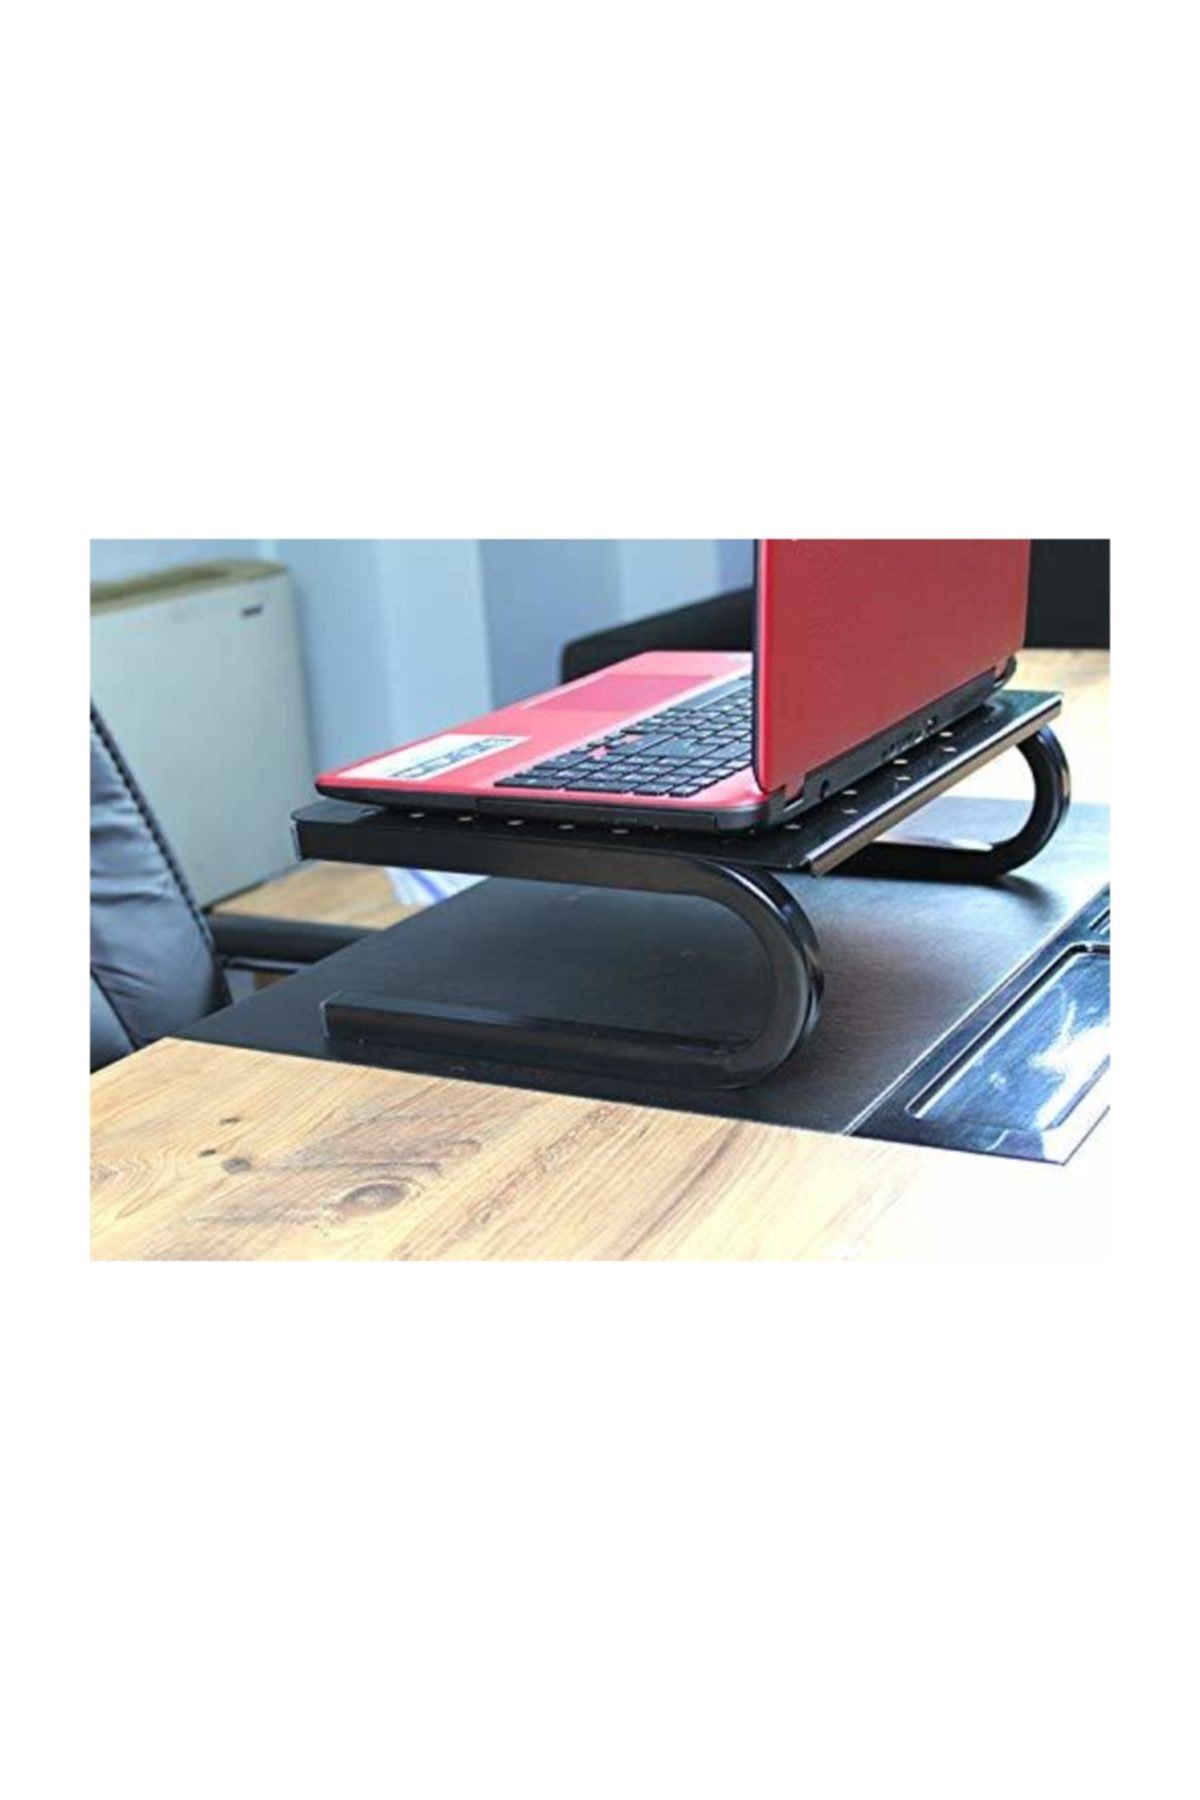 hodbehod Masa Üstü Ekran Monitor Tv Laptop Yazıcı Yükseltici Metal Ayaklı Stand Organiser